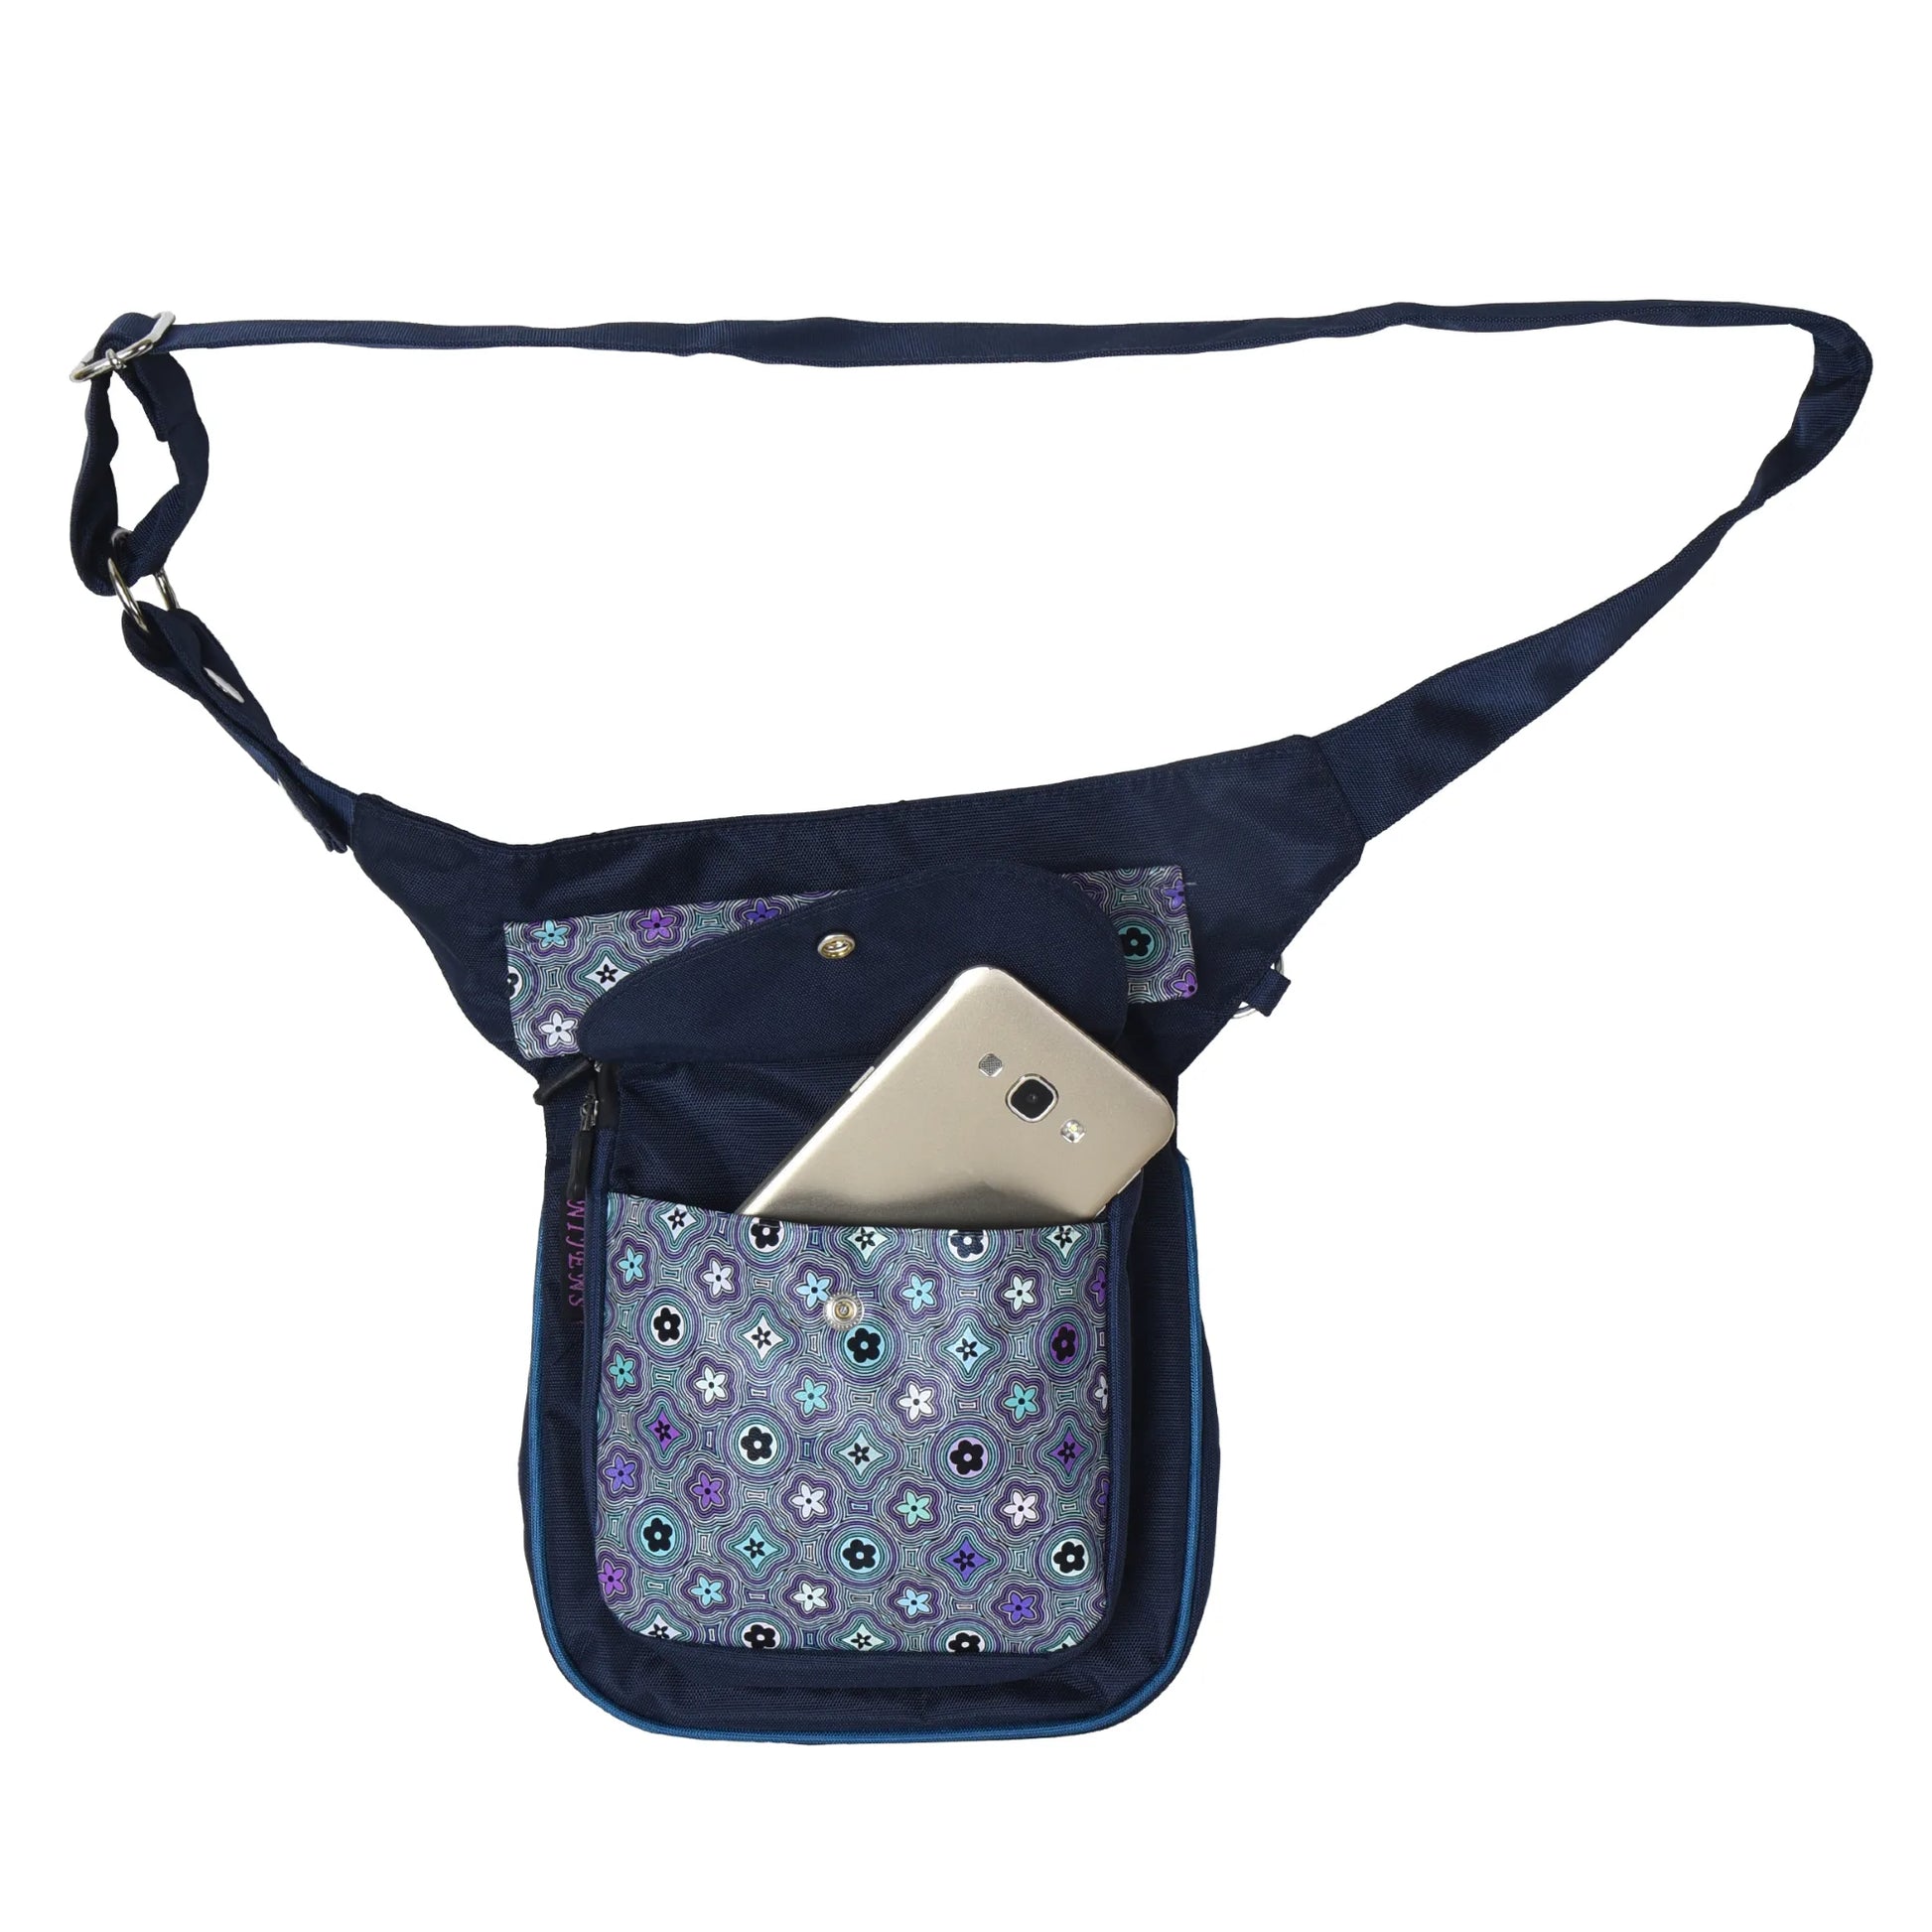 Handy-Tasche, Gürteltasche aus Nylon Dunkelblau, Wasserabweisende mit veganem Leder